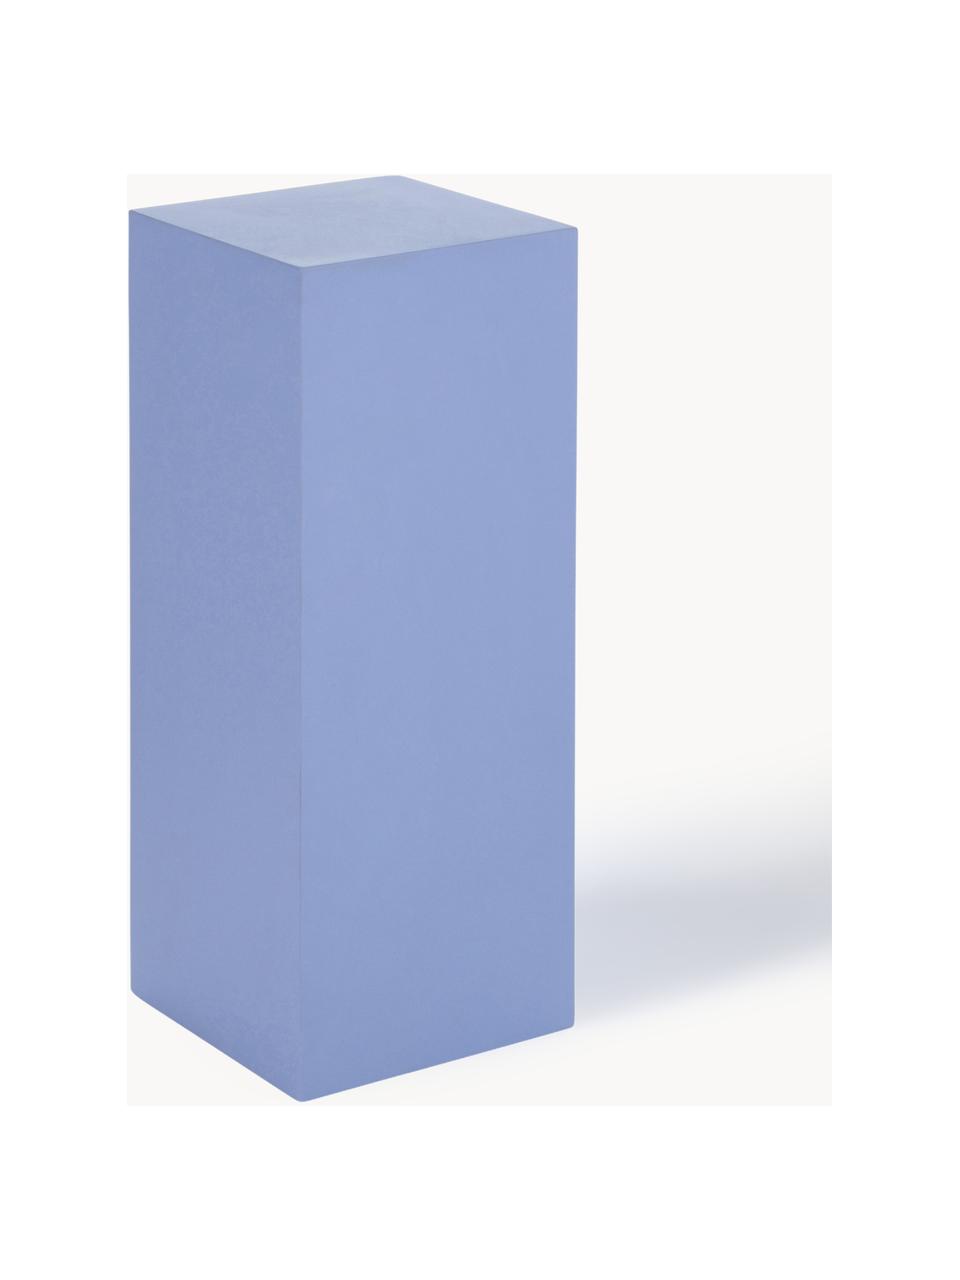 Dekosäule Smash, Mitteldichte Holzfaserplatte (MDF), Blau, B 20 x H 50 cm